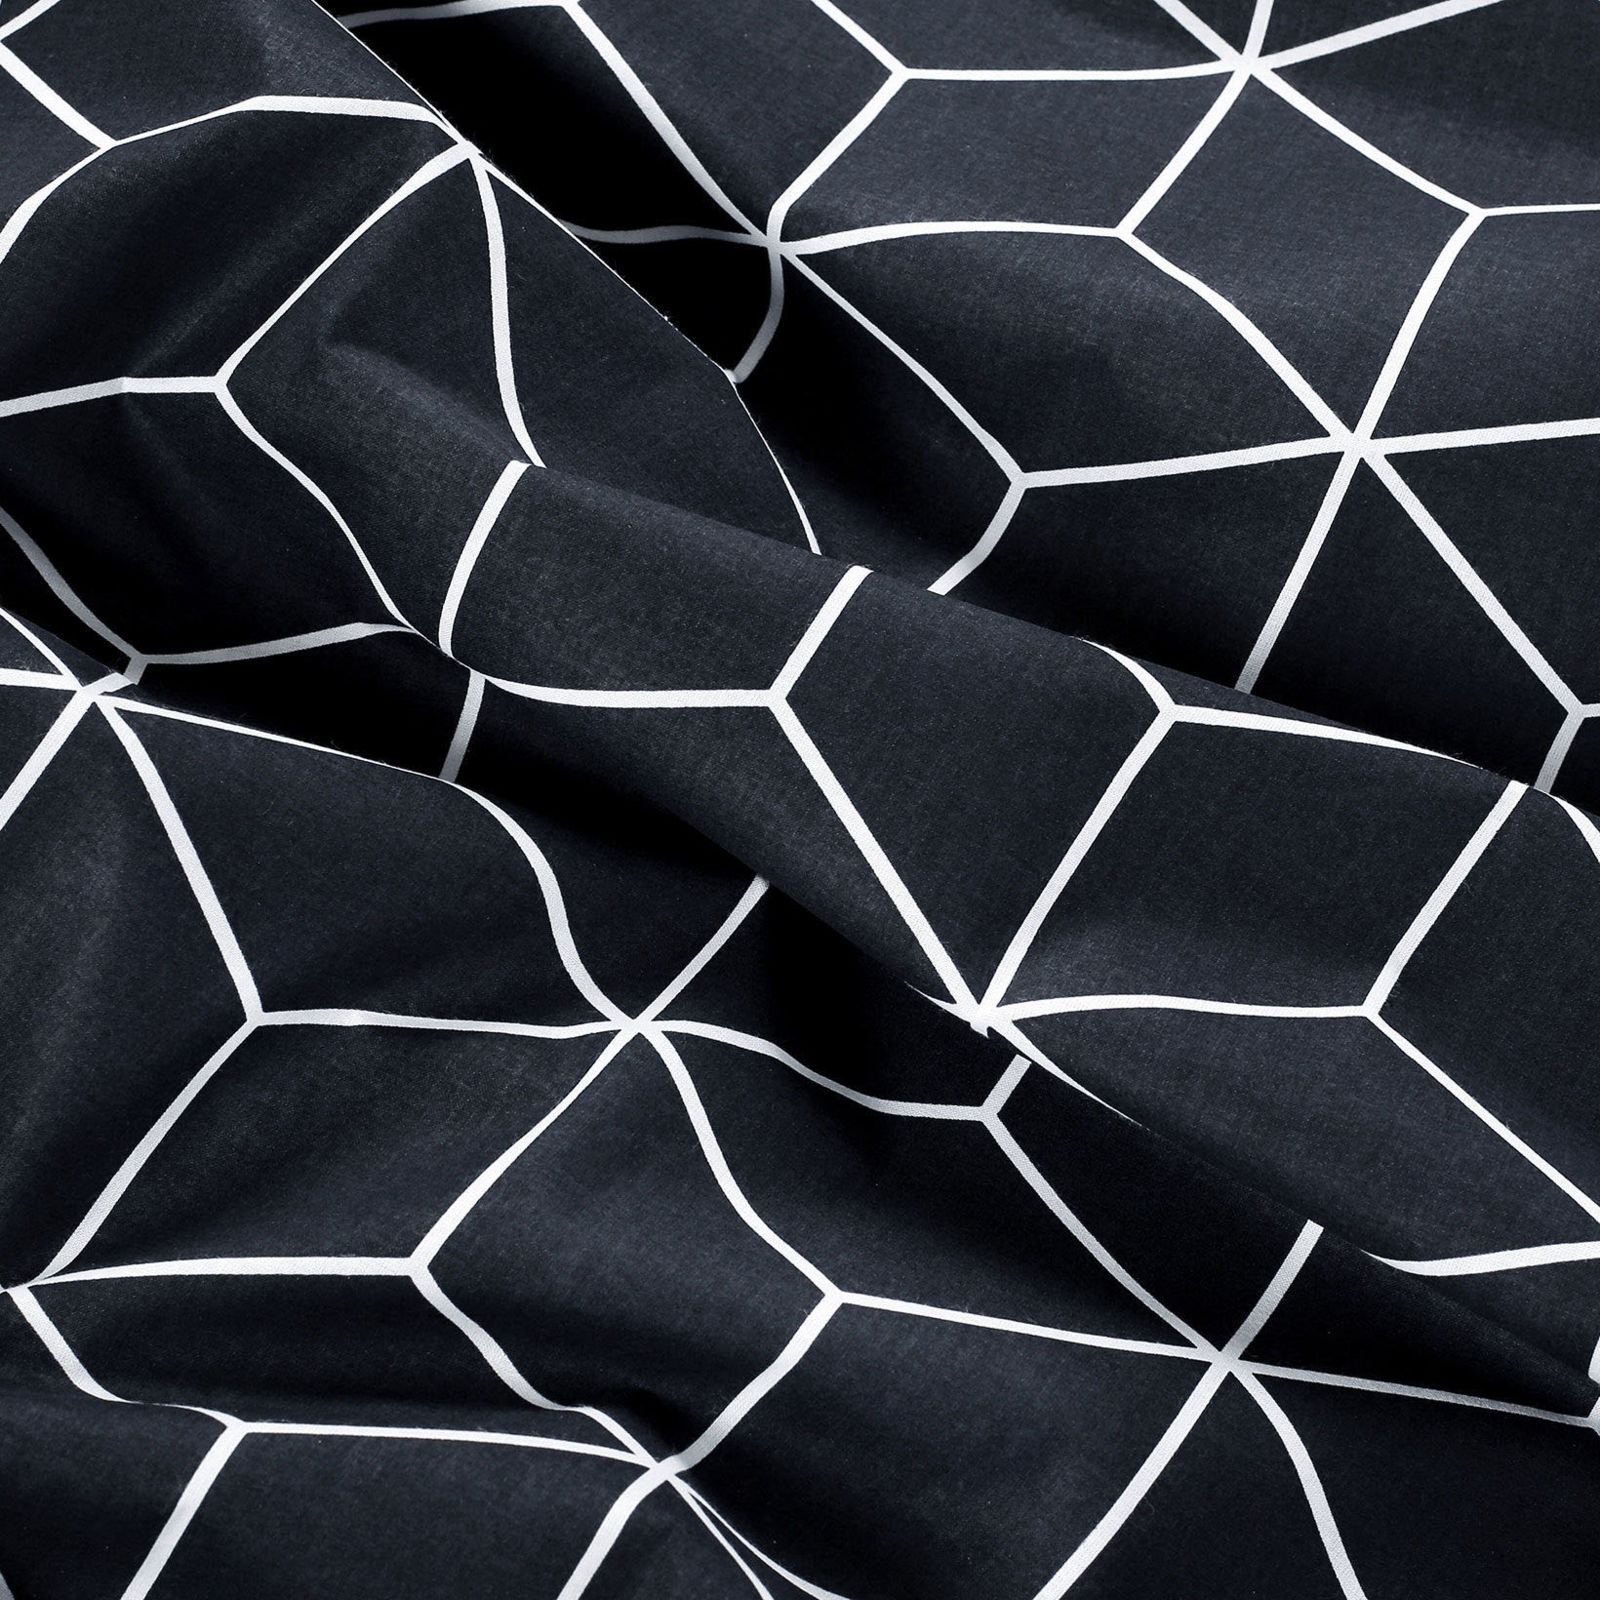 Szögletes terítő 100% pamutvászon - mozaik mintás, sötétkék alapon